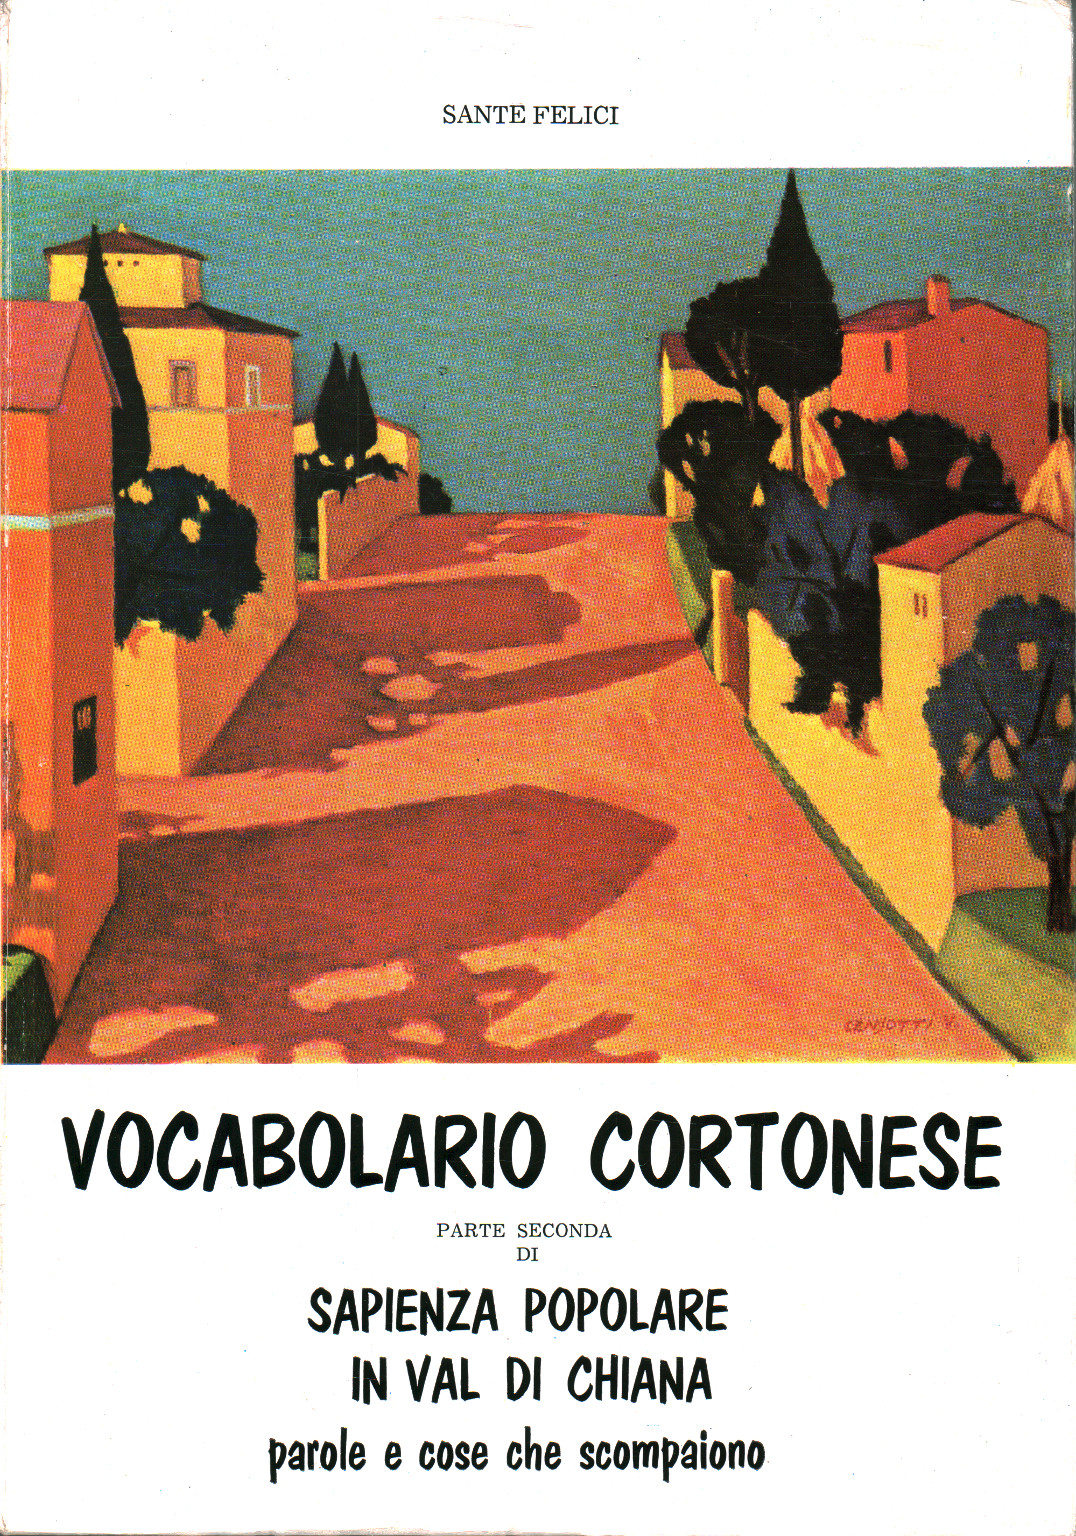 Cortonese vocabulary. Popular wisdom in Val di, s.a.